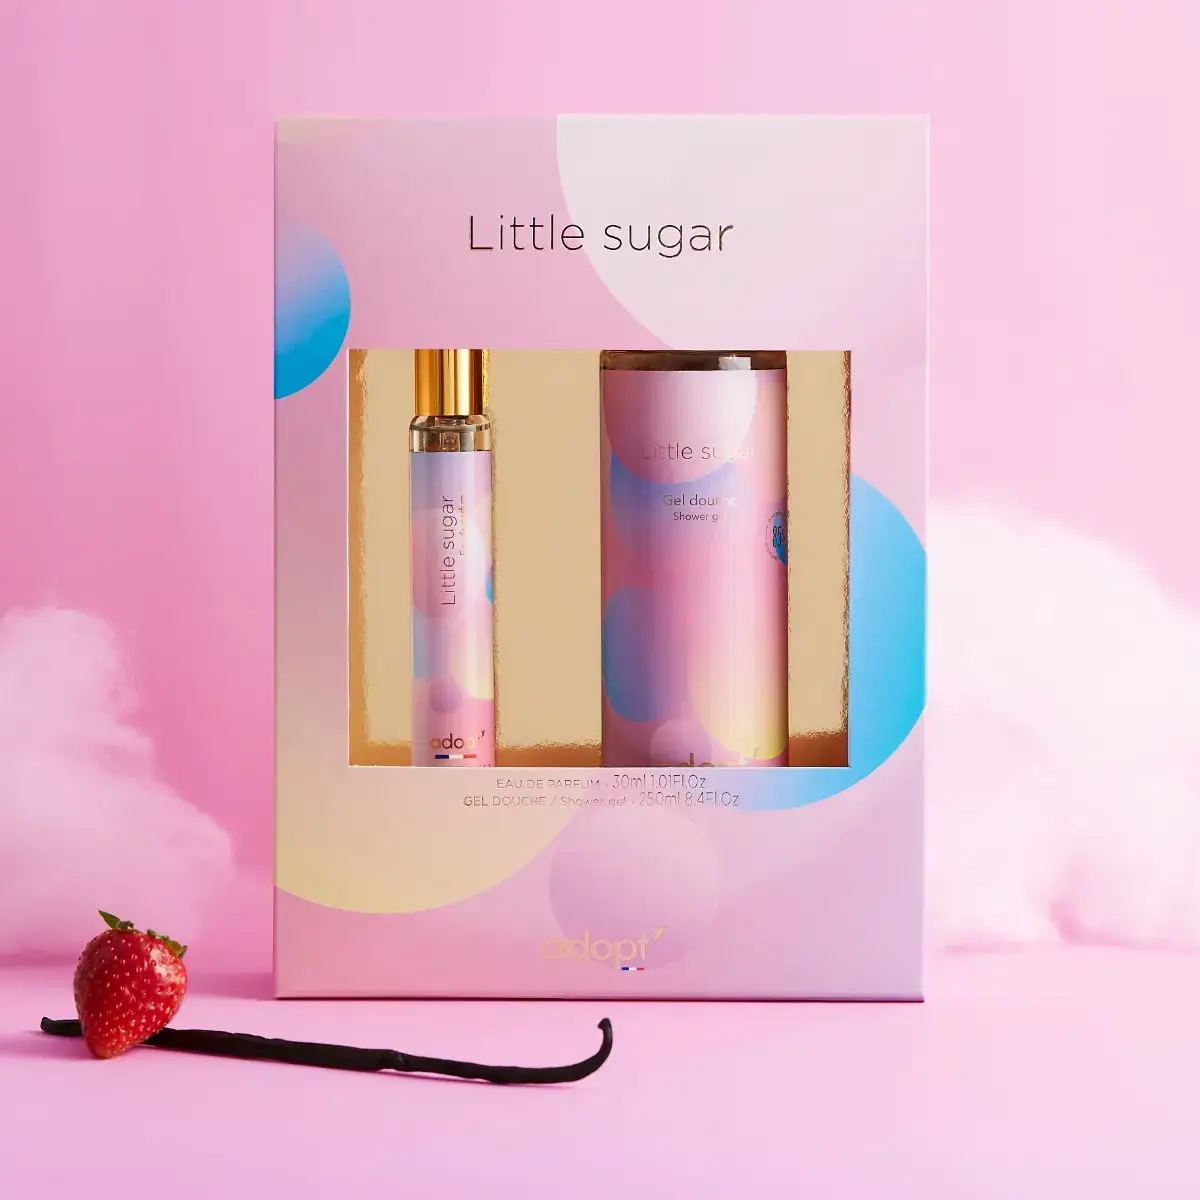 Little Sugar Gift Box Eau De Parfum 30ml – Shower Gel | Adopt